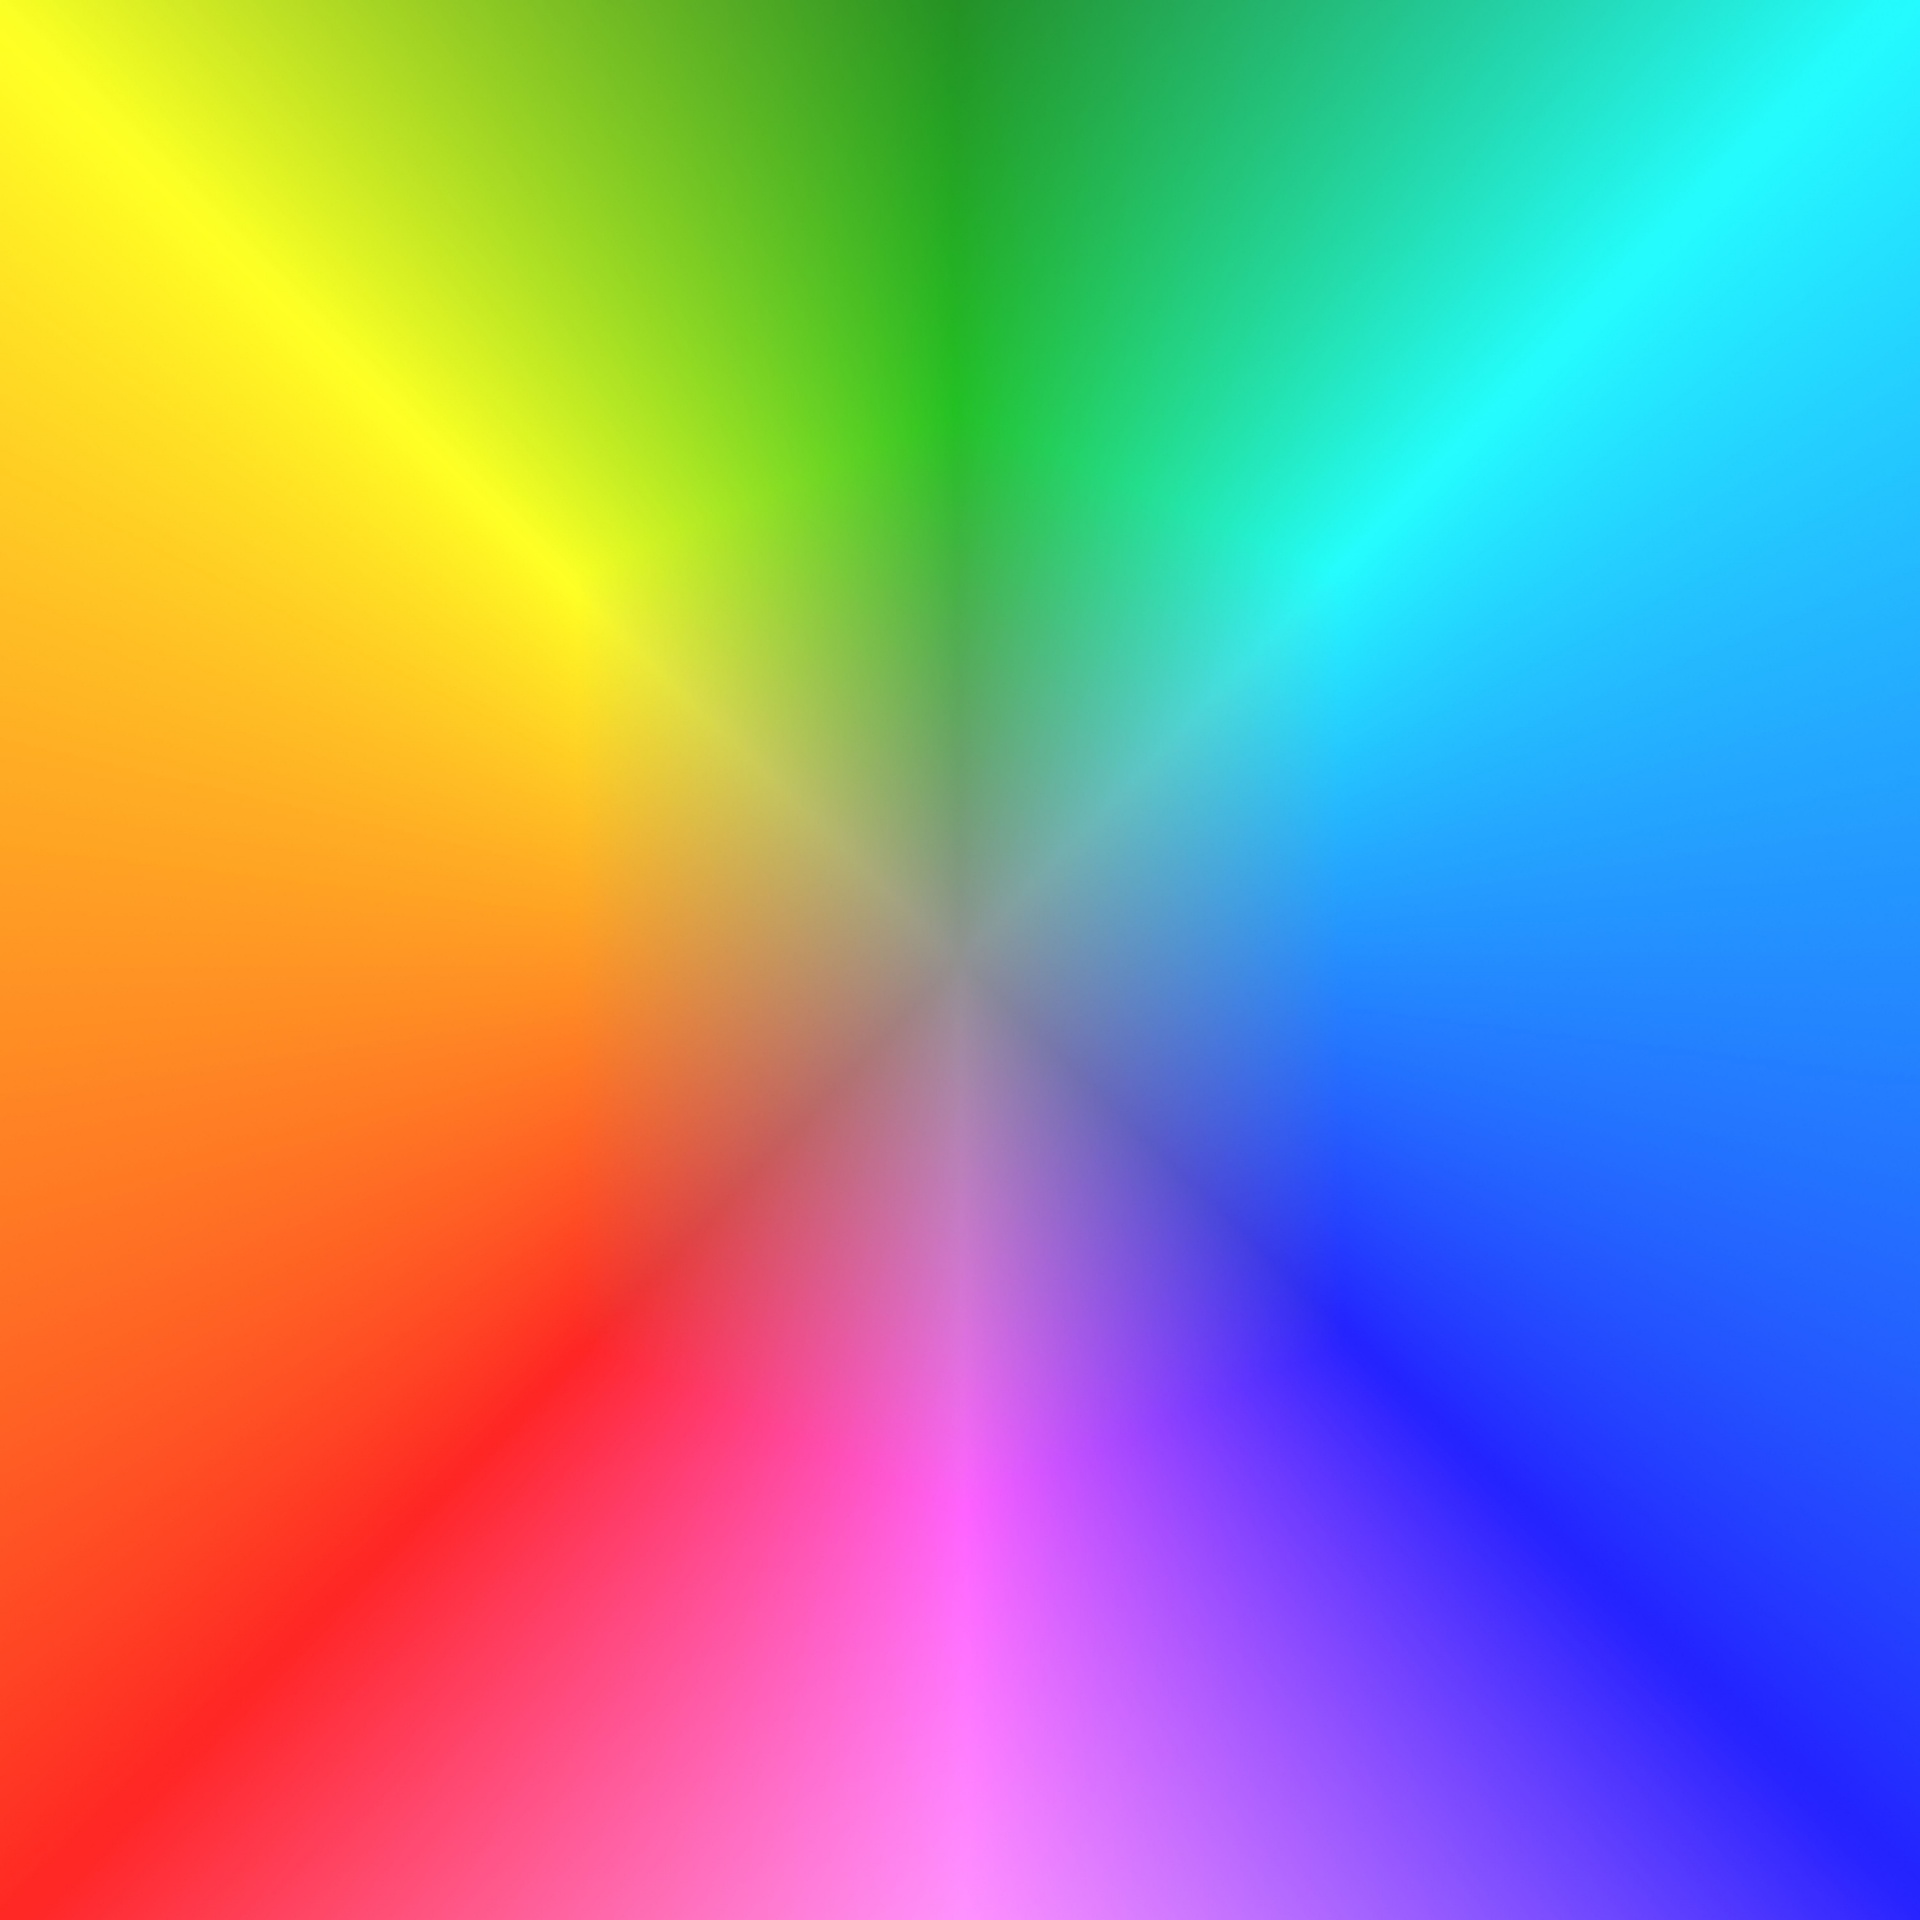 Verloop kleuren regenboog textuur